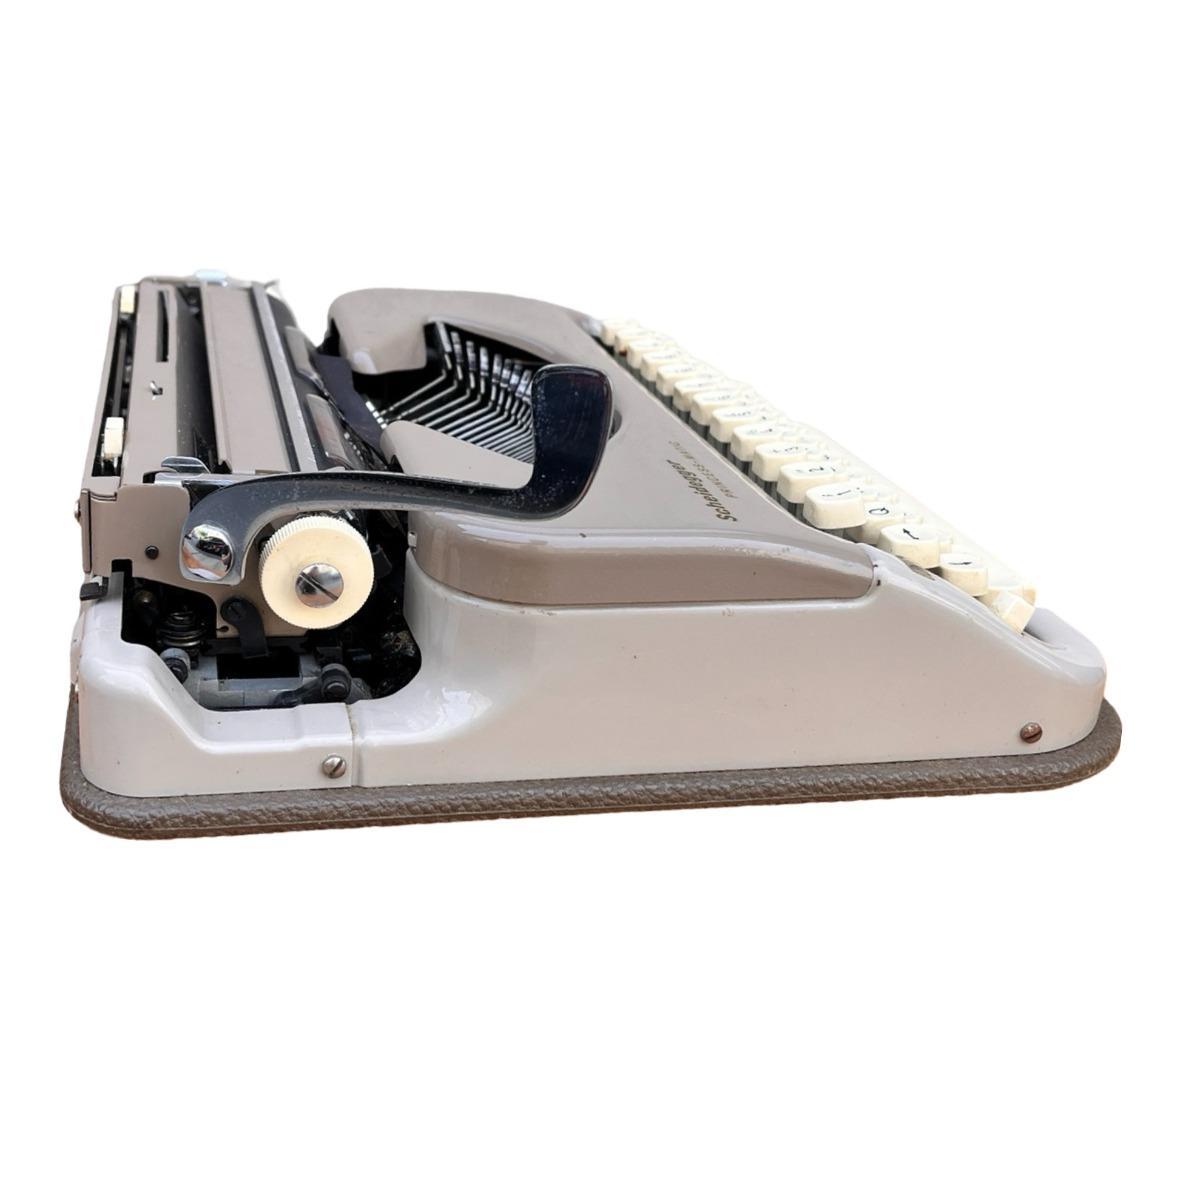 Walizkowa maszyna do pisania, Scheidegger PRINCESS-MATIC, Niemcy, lata 60. nr. 4